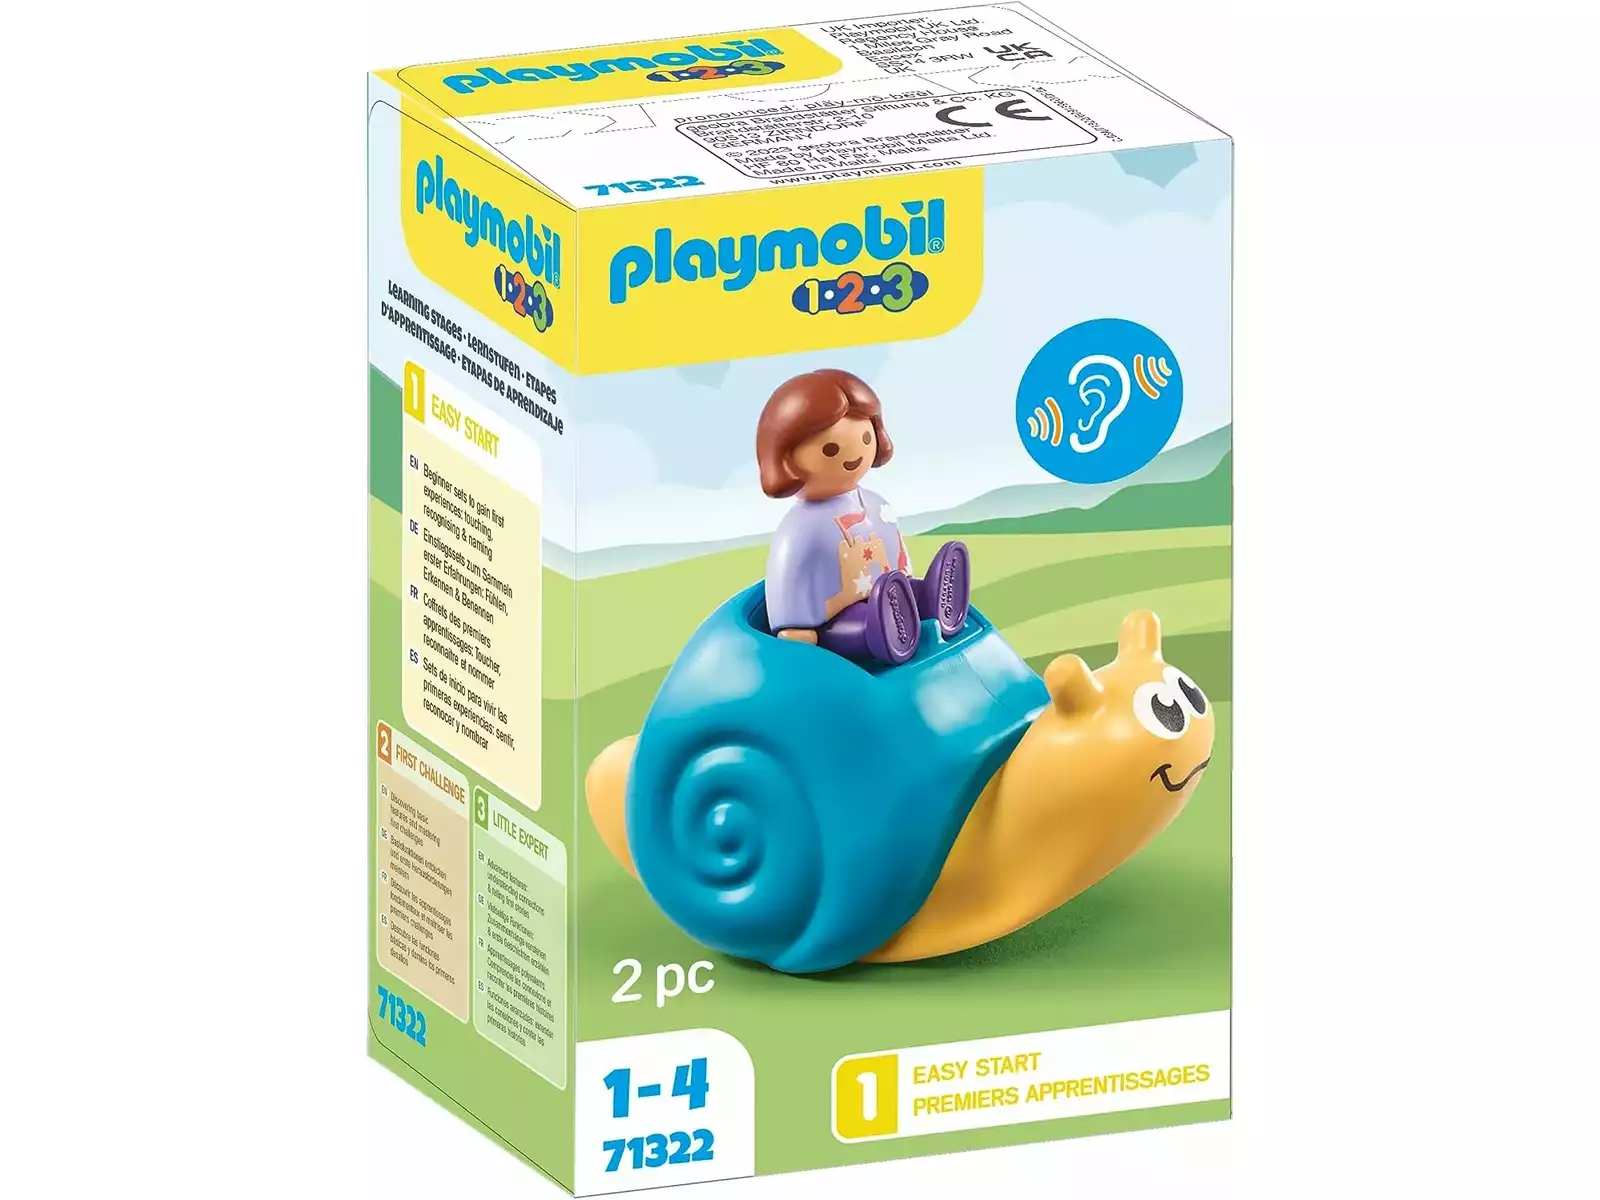 Playmobil 123 Airplane 71159